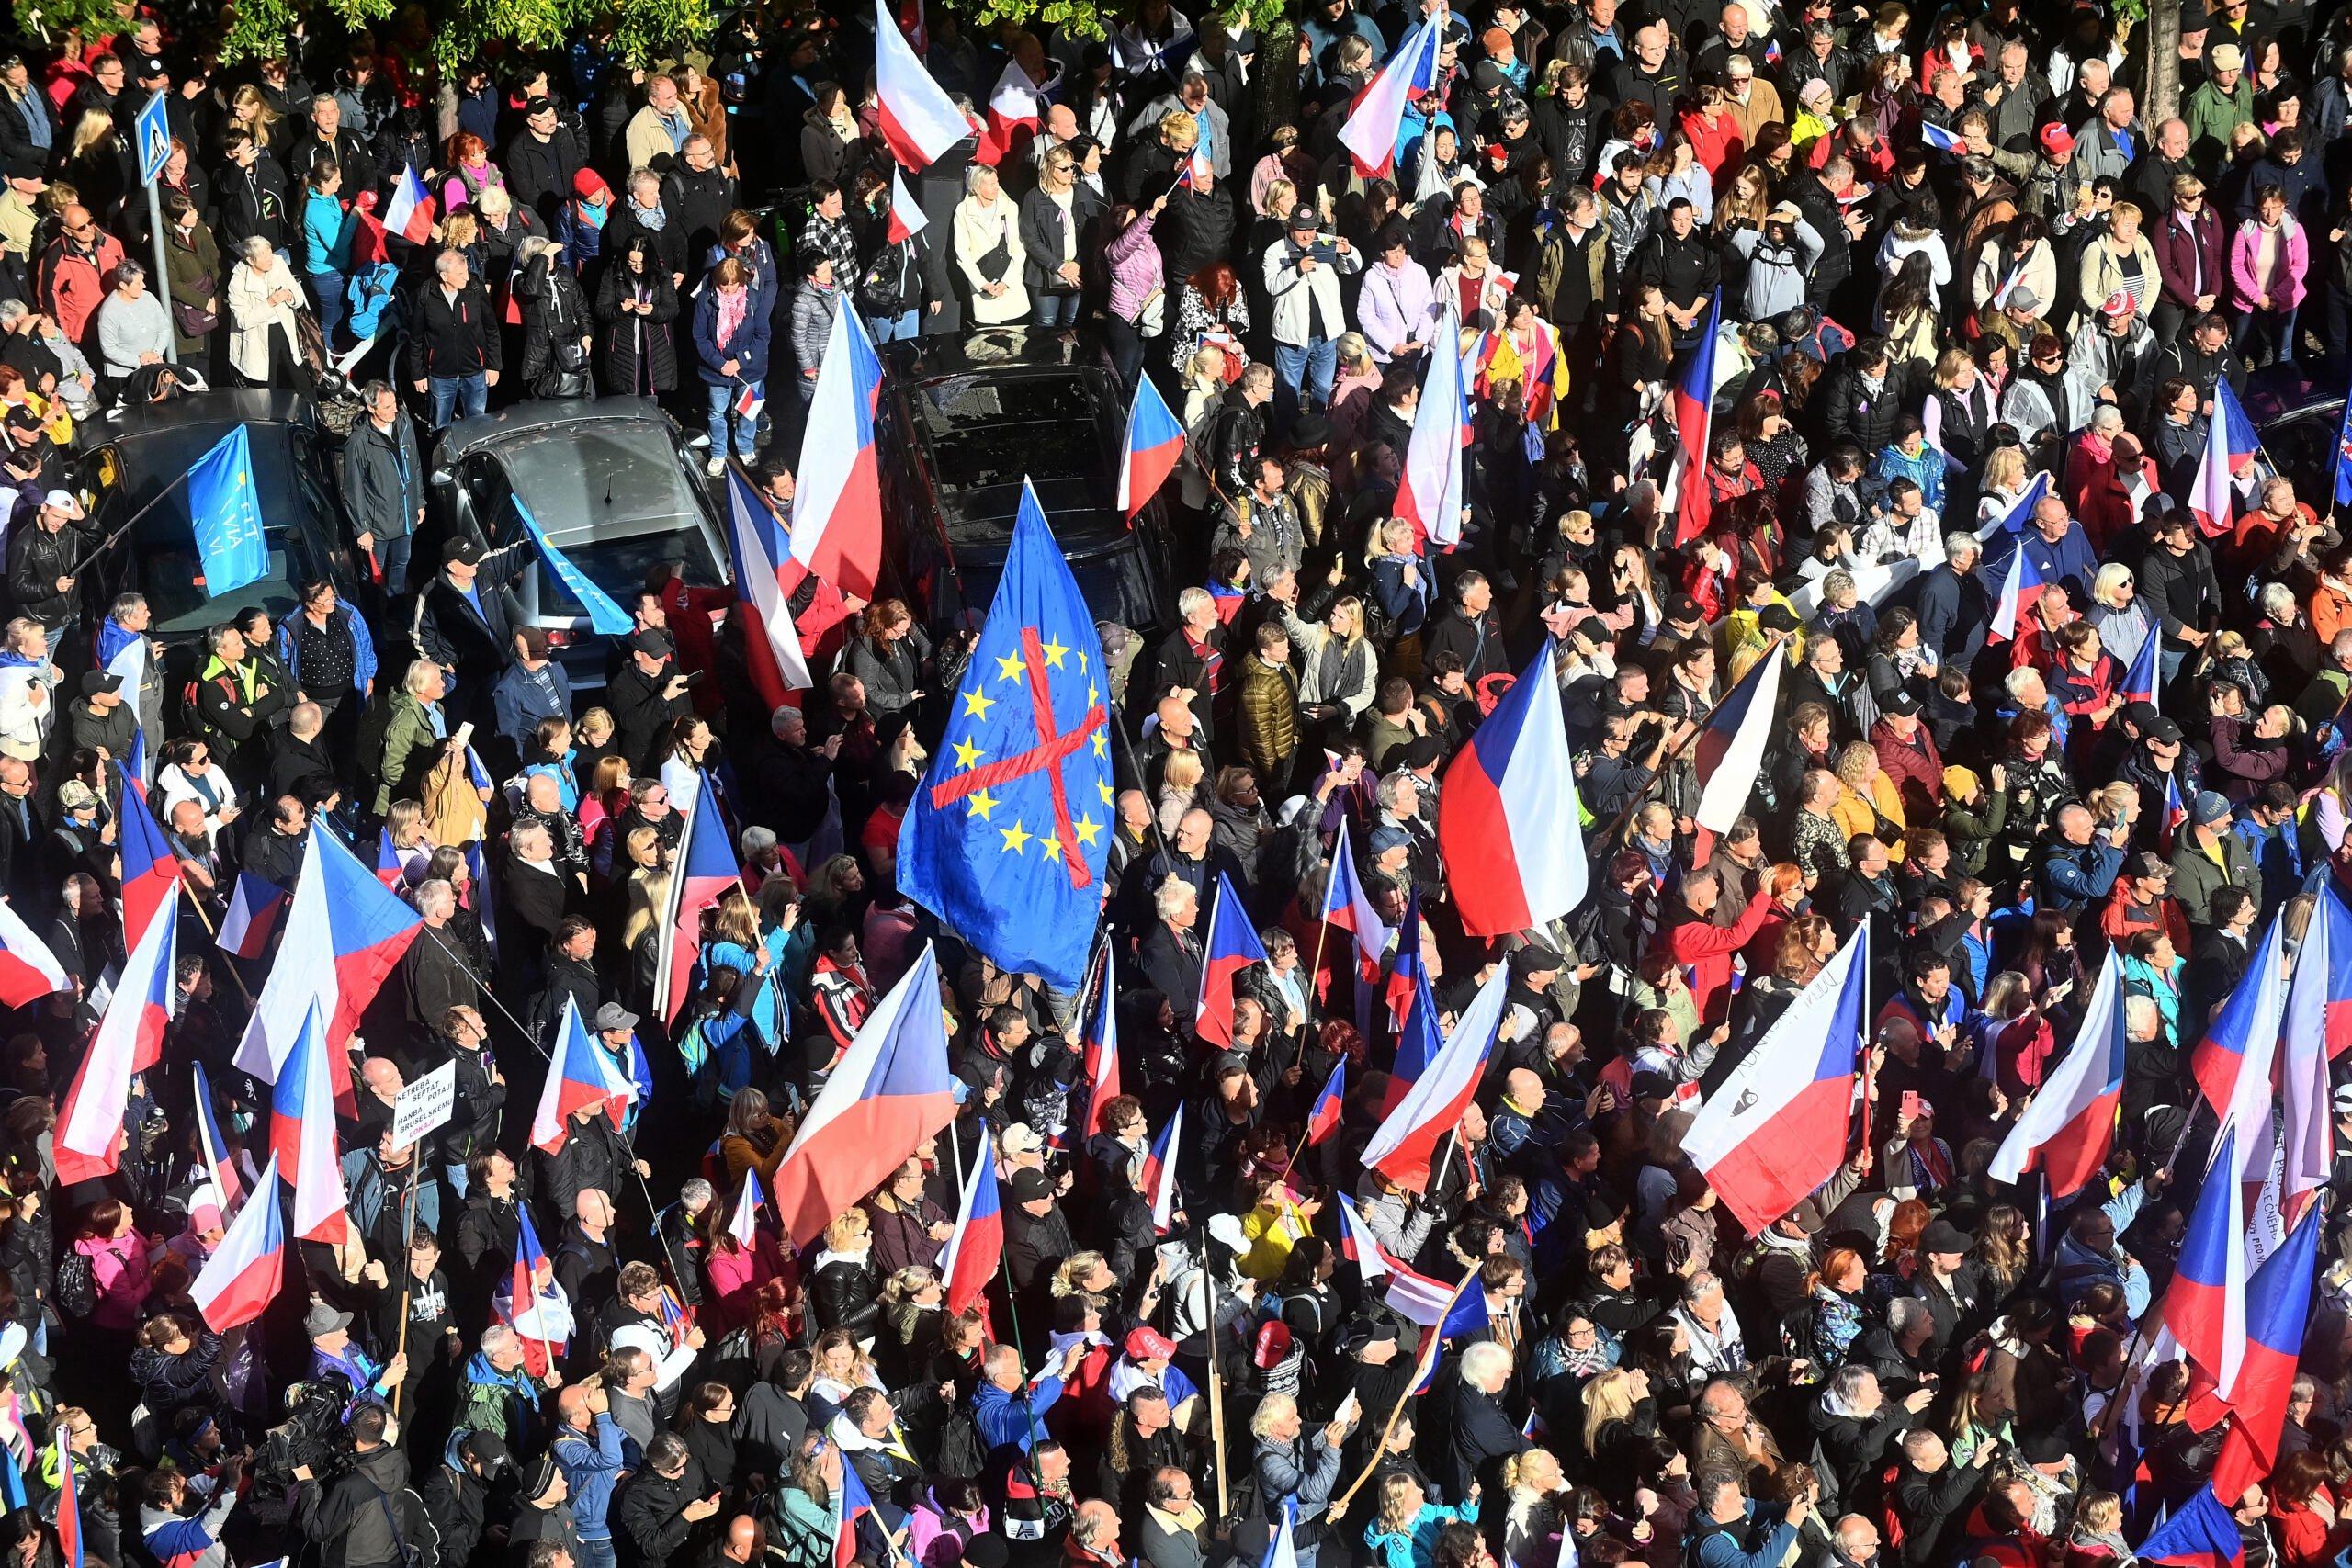 Tłum ludzi z czeskimi flagami, w centralnym miejscu transaprent z przekroślonymi gwiazdkami Unii Europejskiej